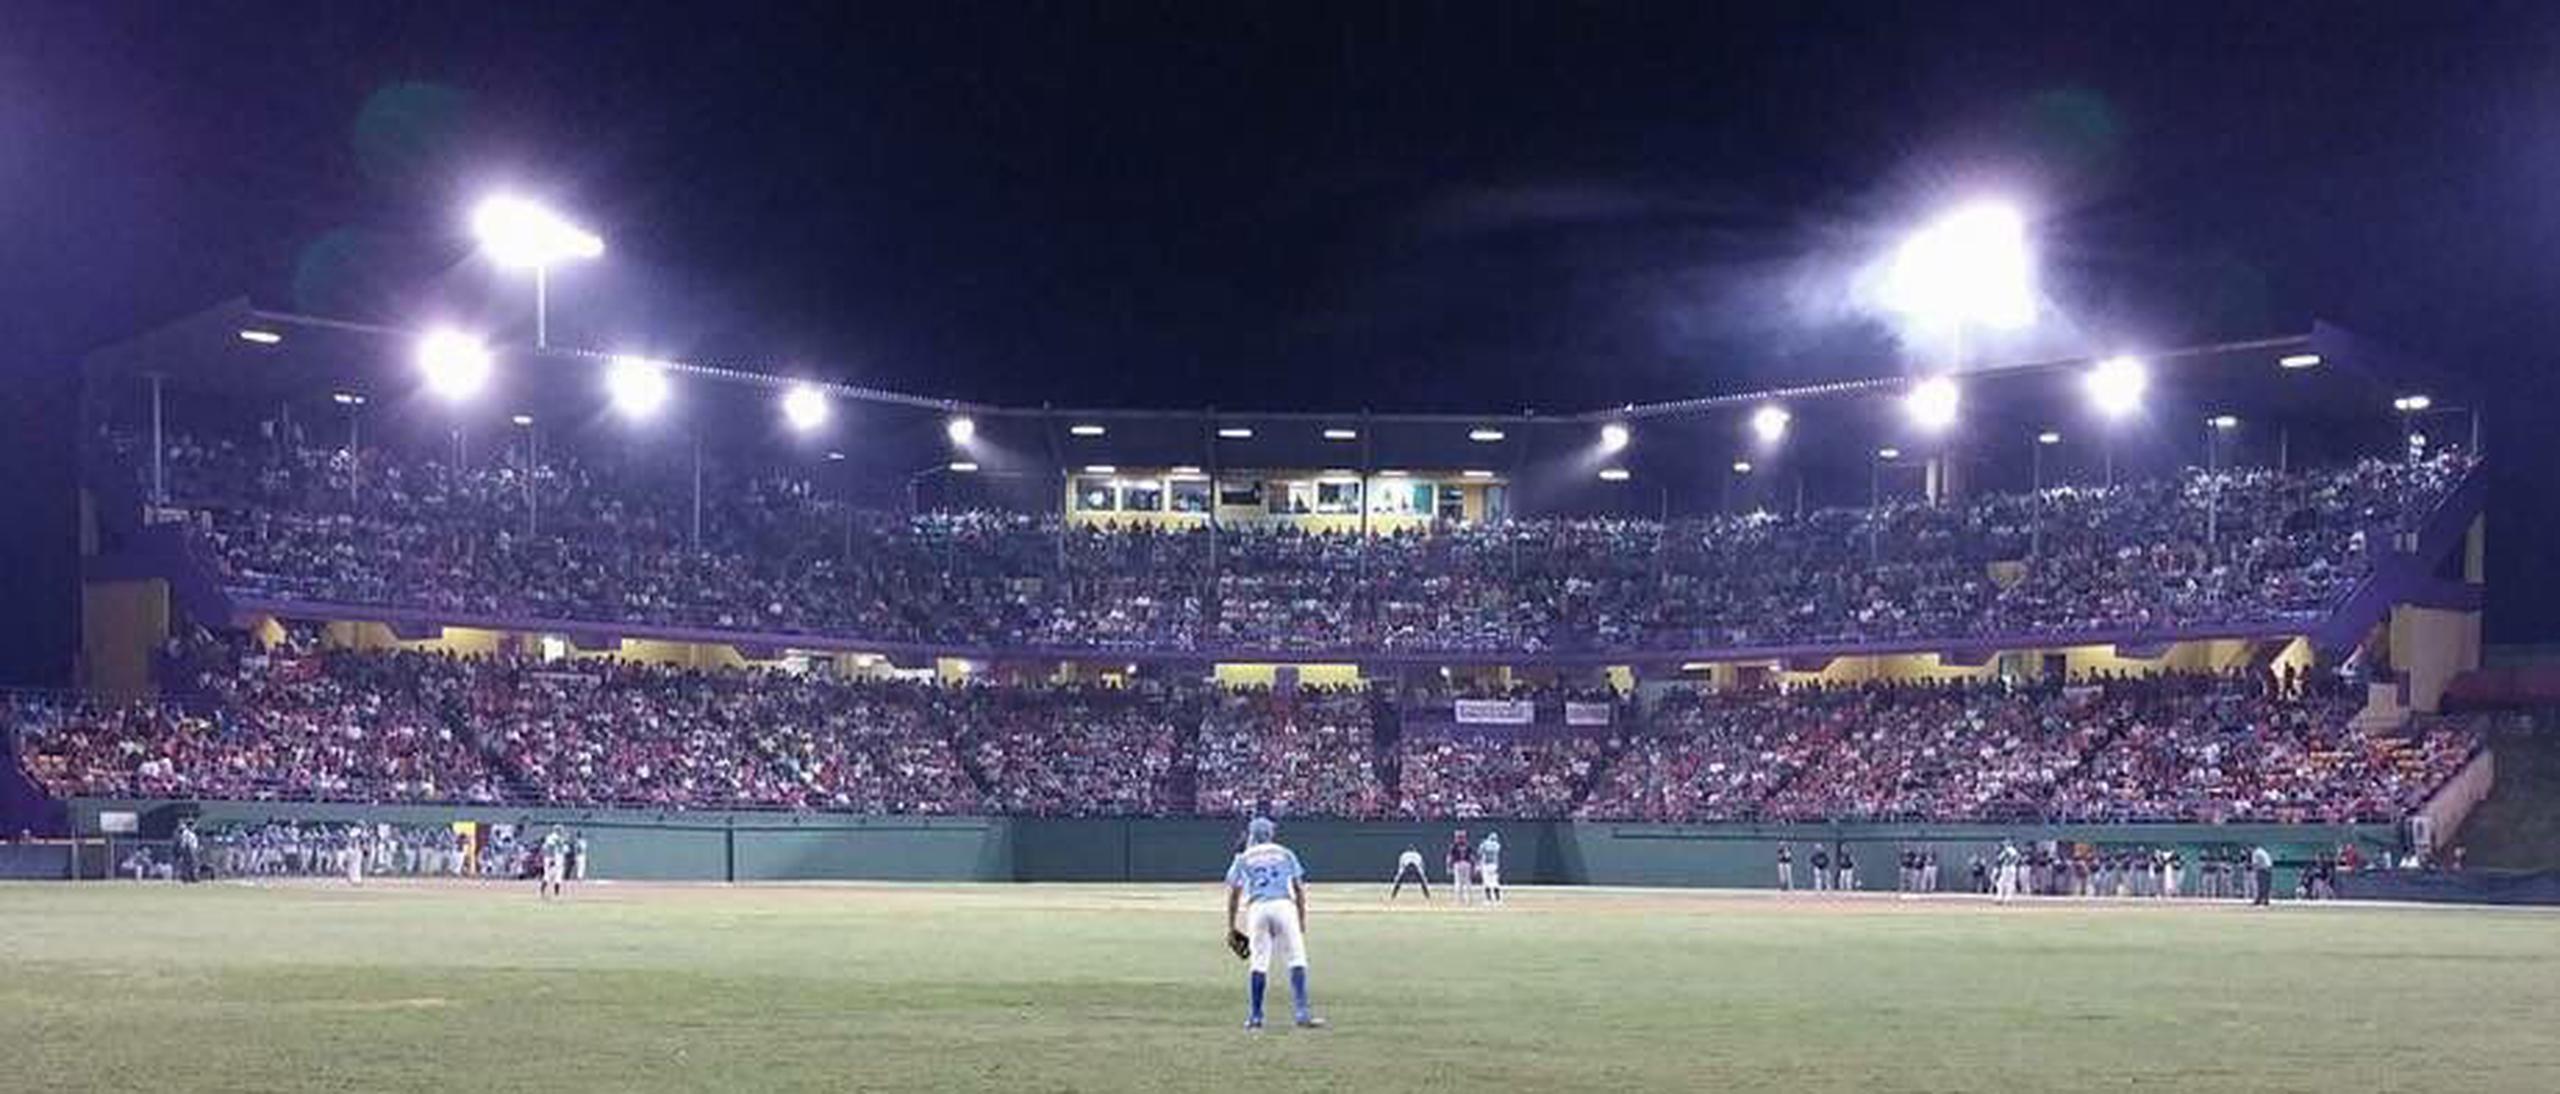 Al Estadio Francisco Negrón, hogar de los Artesanos de las Piedras del Béisbol Superior Doble A, se le asignó un presupuesto de $5 millones.